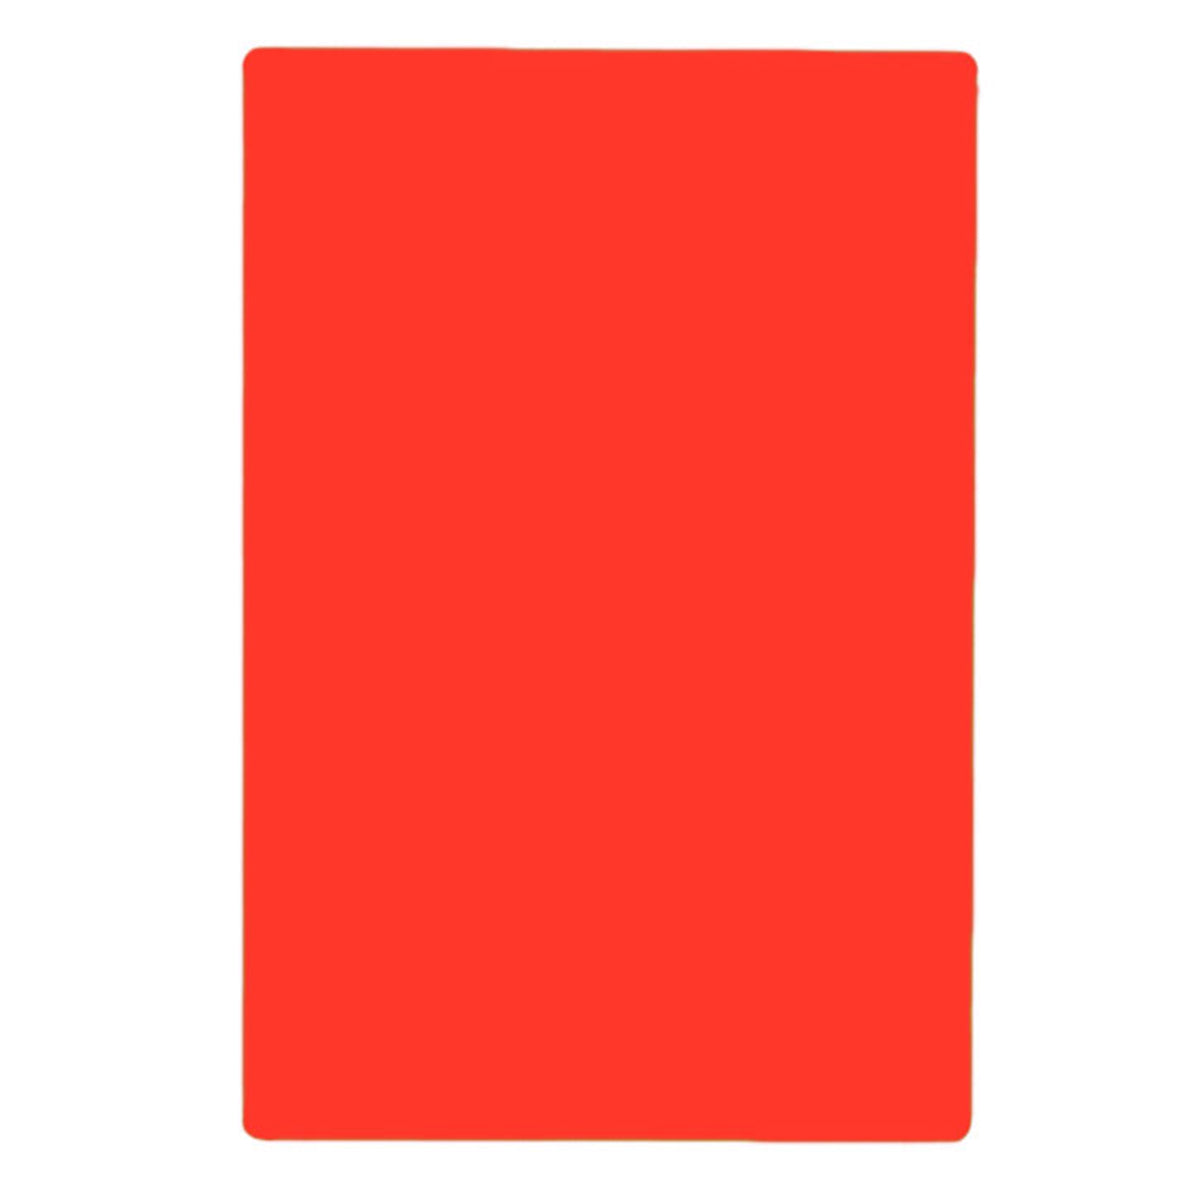 Tabla para Picar de Plástico Rojo de 46 x 61 cm NSF